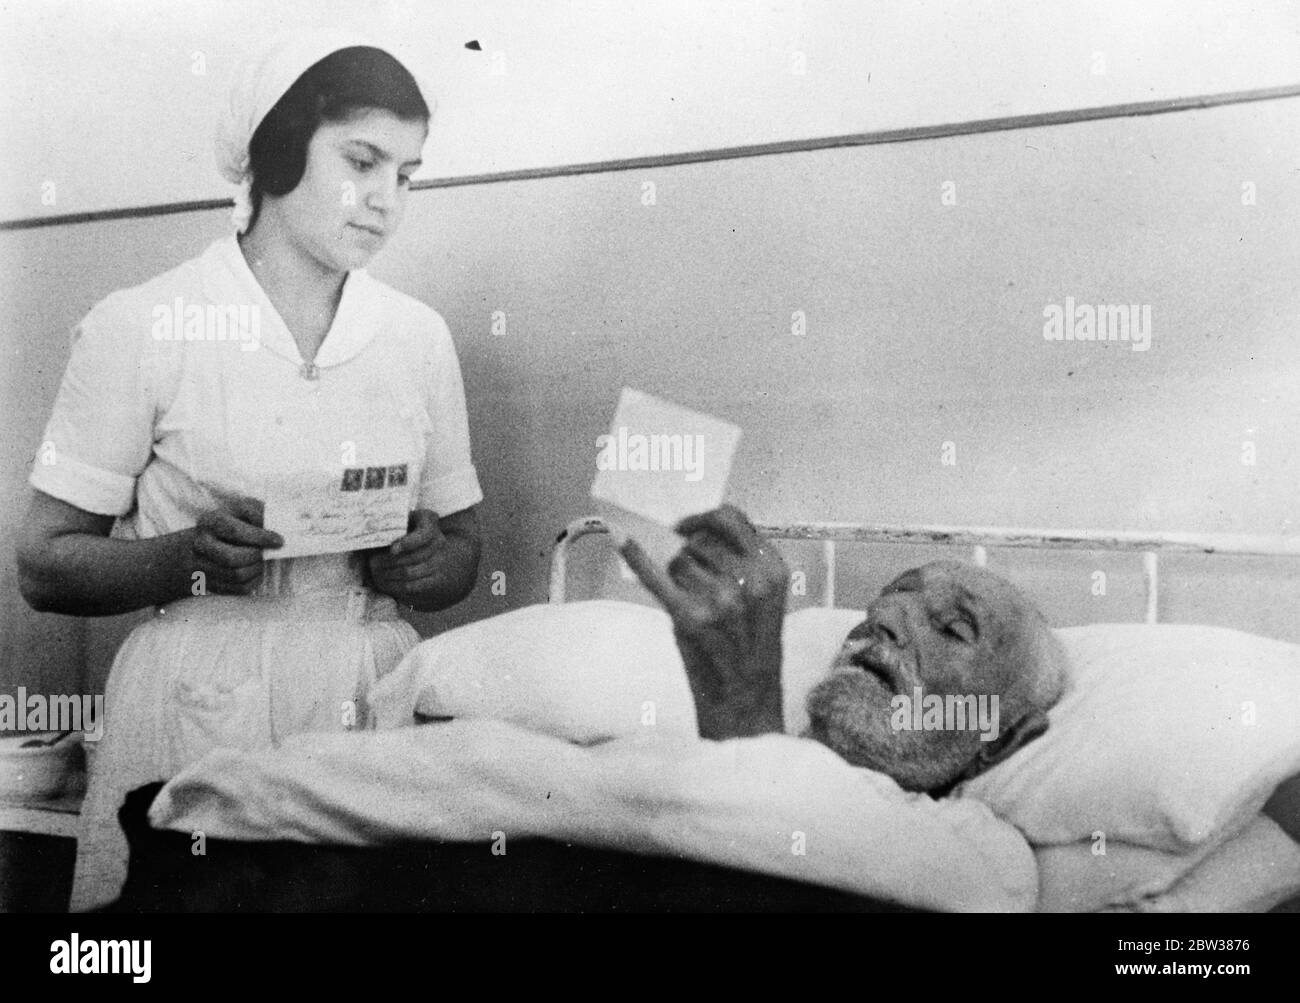 Zaro Agha kann wieder heiraten. Vorschlag von amerikanischen Mädchen. Liegen schwer krank im Krankenhaus in Istanbul, Zaro Agha, der behauptet, mehr als 160 Jahre alt und der älteste Mann der Welt sein, hat einen Vorschlag von Heirat von einem 35-jährigen amerikanischen Mädchen erhalten, Miss Hackman. Zaro Agha liest den Brief von Miss Hackman im Krankenhaus in Istanbul . Zaro hat bereits eine Reihe von Frauen überlebt. Mai 1934 Stockfoto